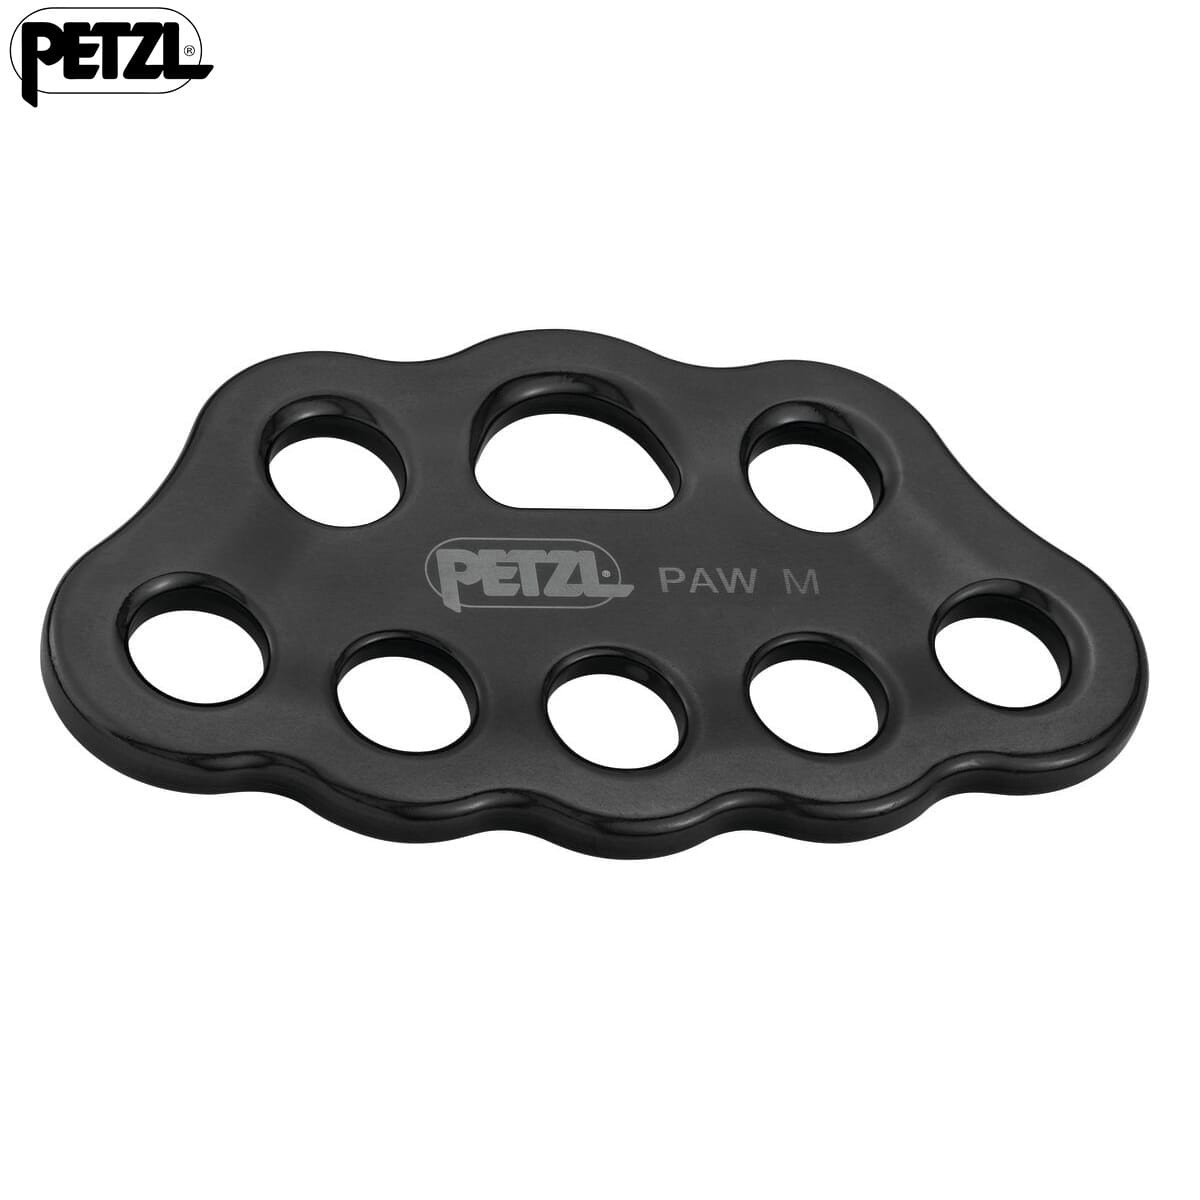 Petzl Paw Rigging Plate Medium